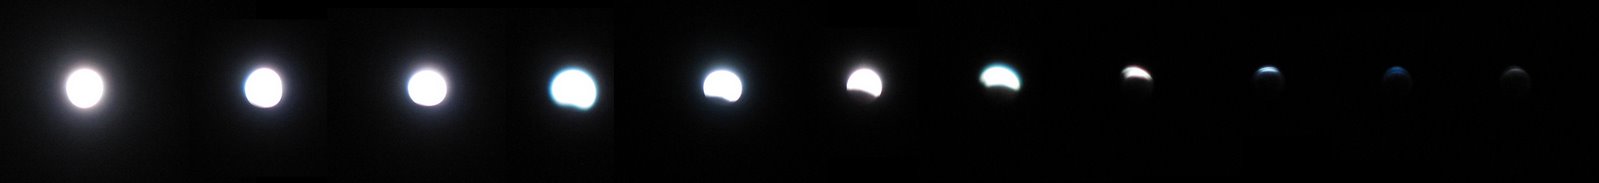 [Lunar+Eclipse+3+March+2007.jpg]